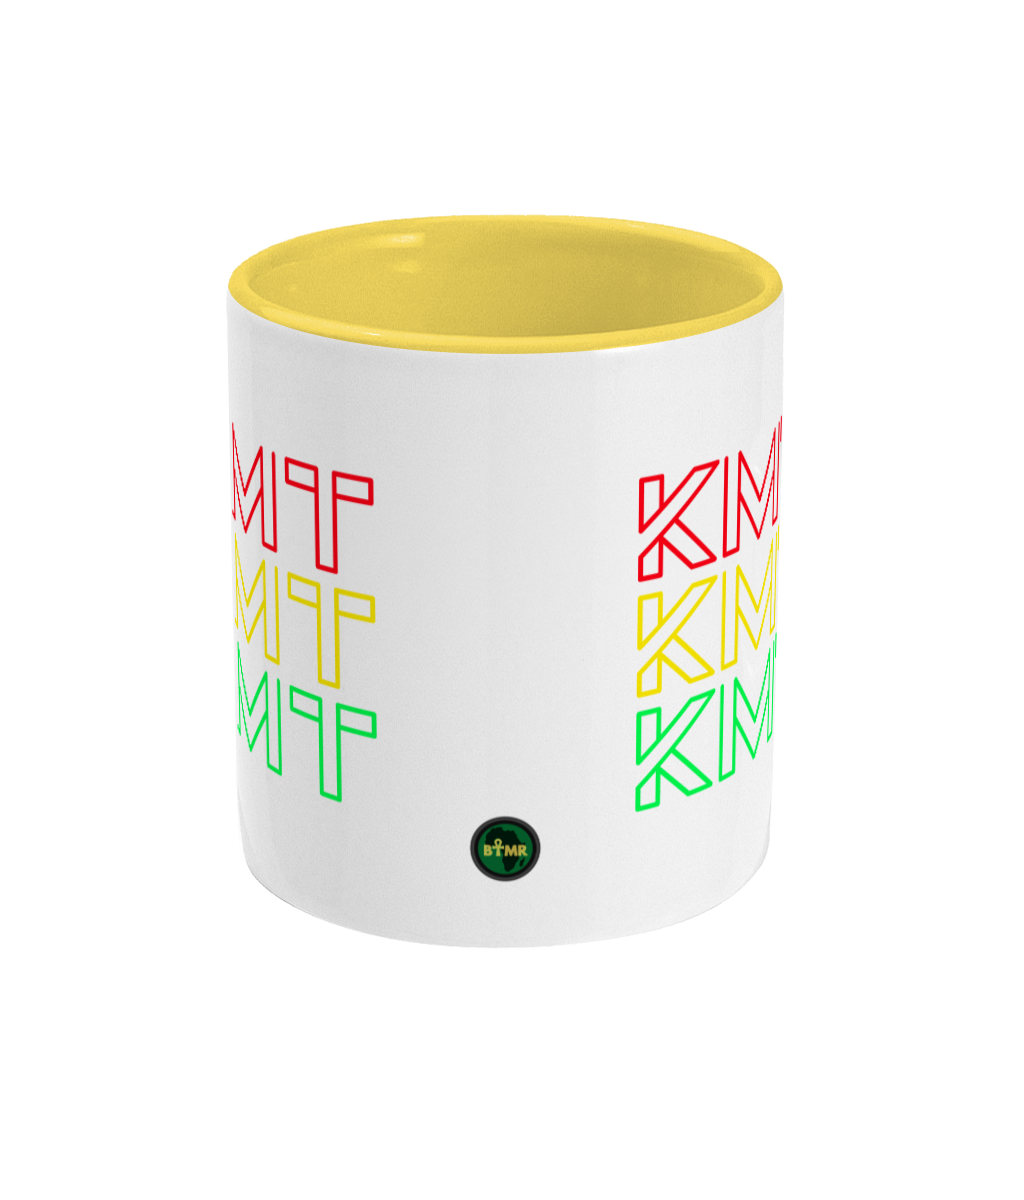 Ceramic Cup | KMT | 4 colours